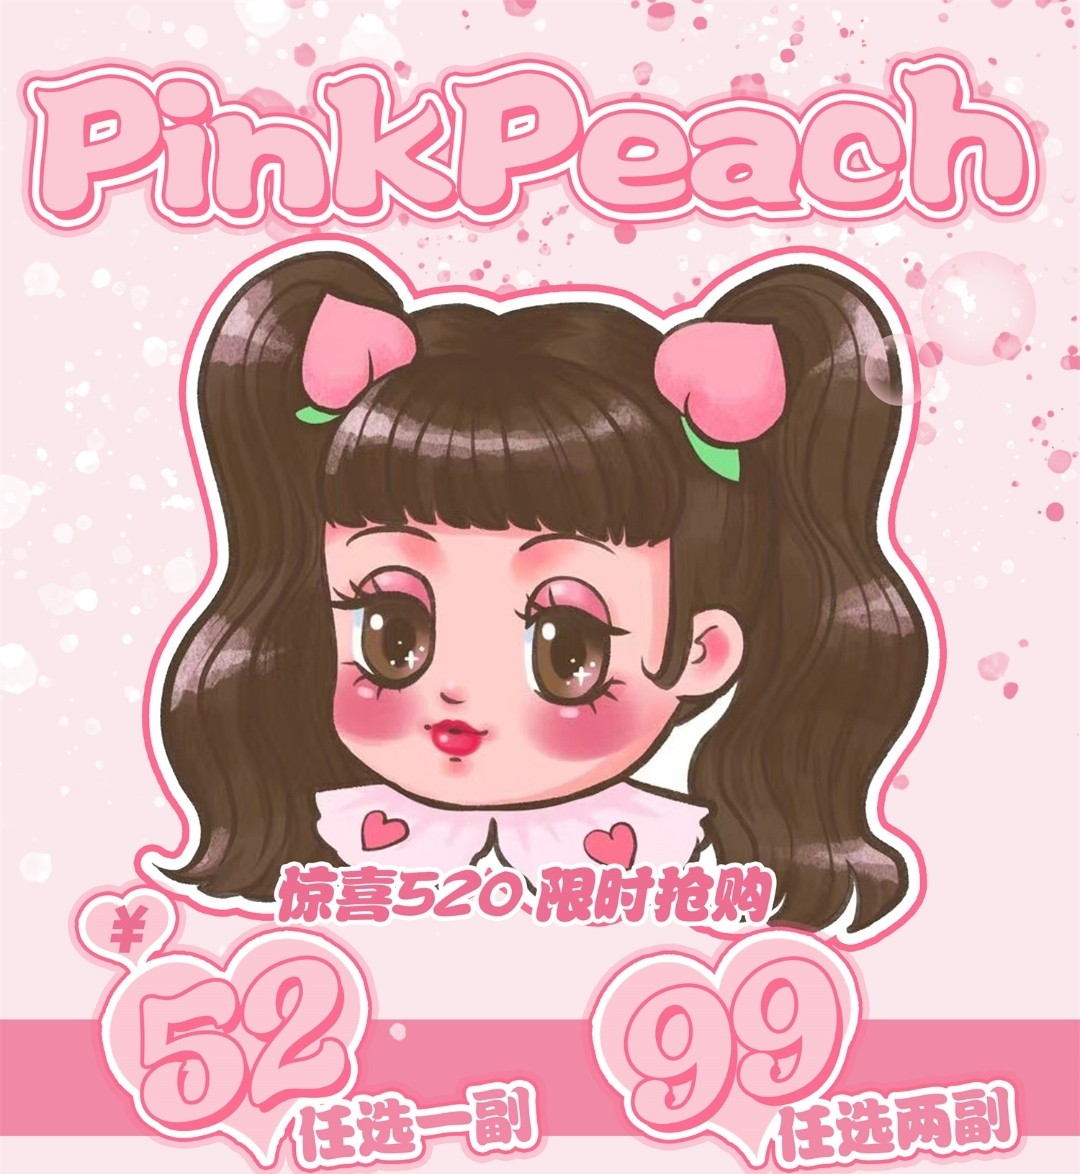 【秒杀】PINKPEACH 520甜蜜出击 宠粉狂魔限时抢购已开启